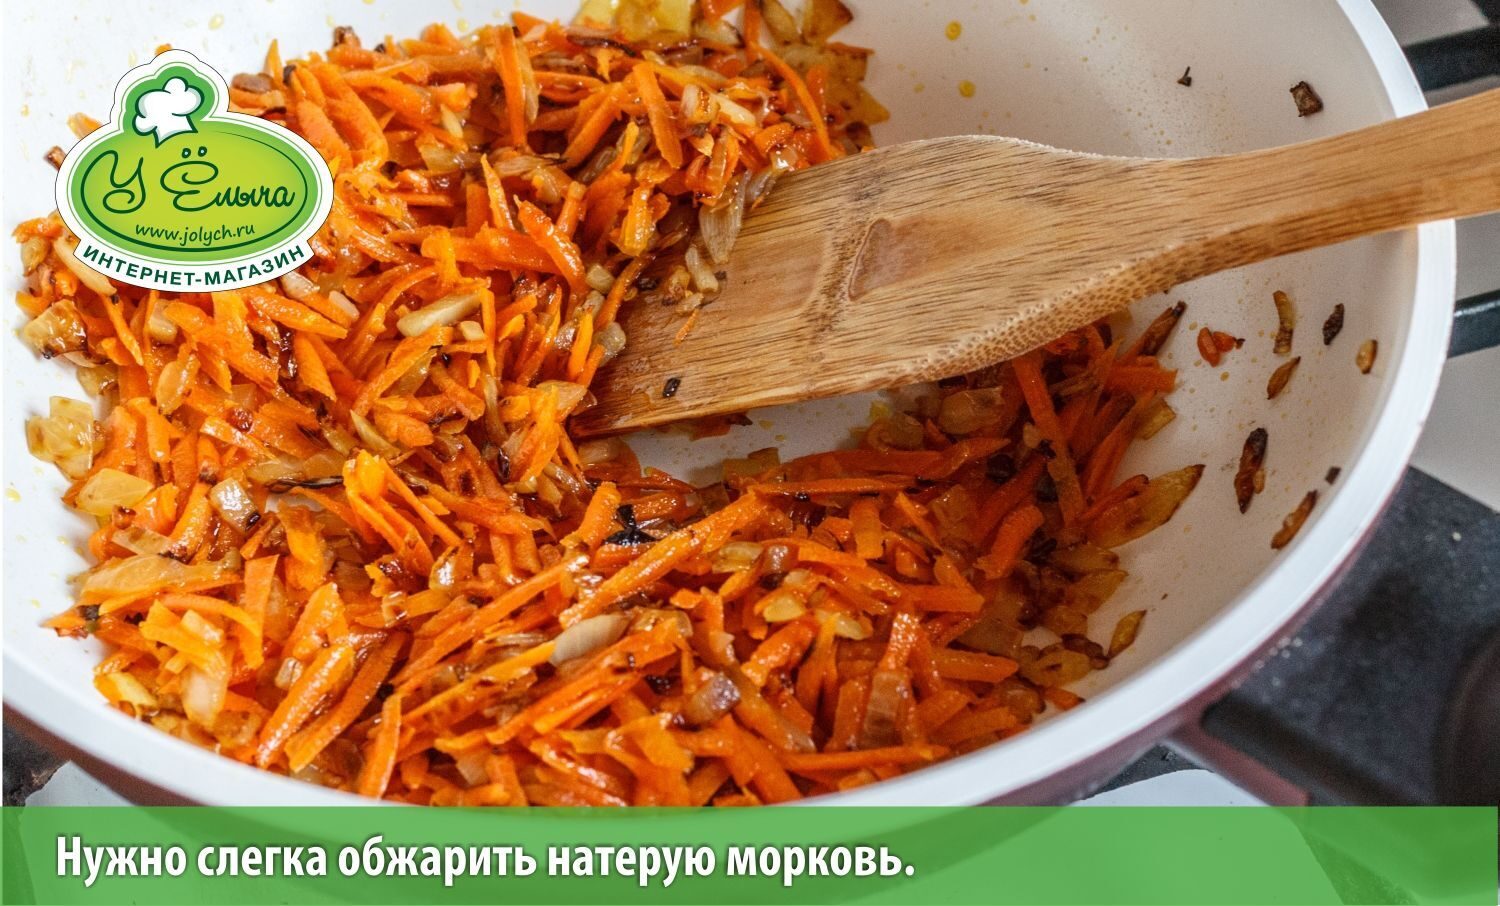 Нужно обжарить натерную морковь (грибной суп с лисичками рецепт)